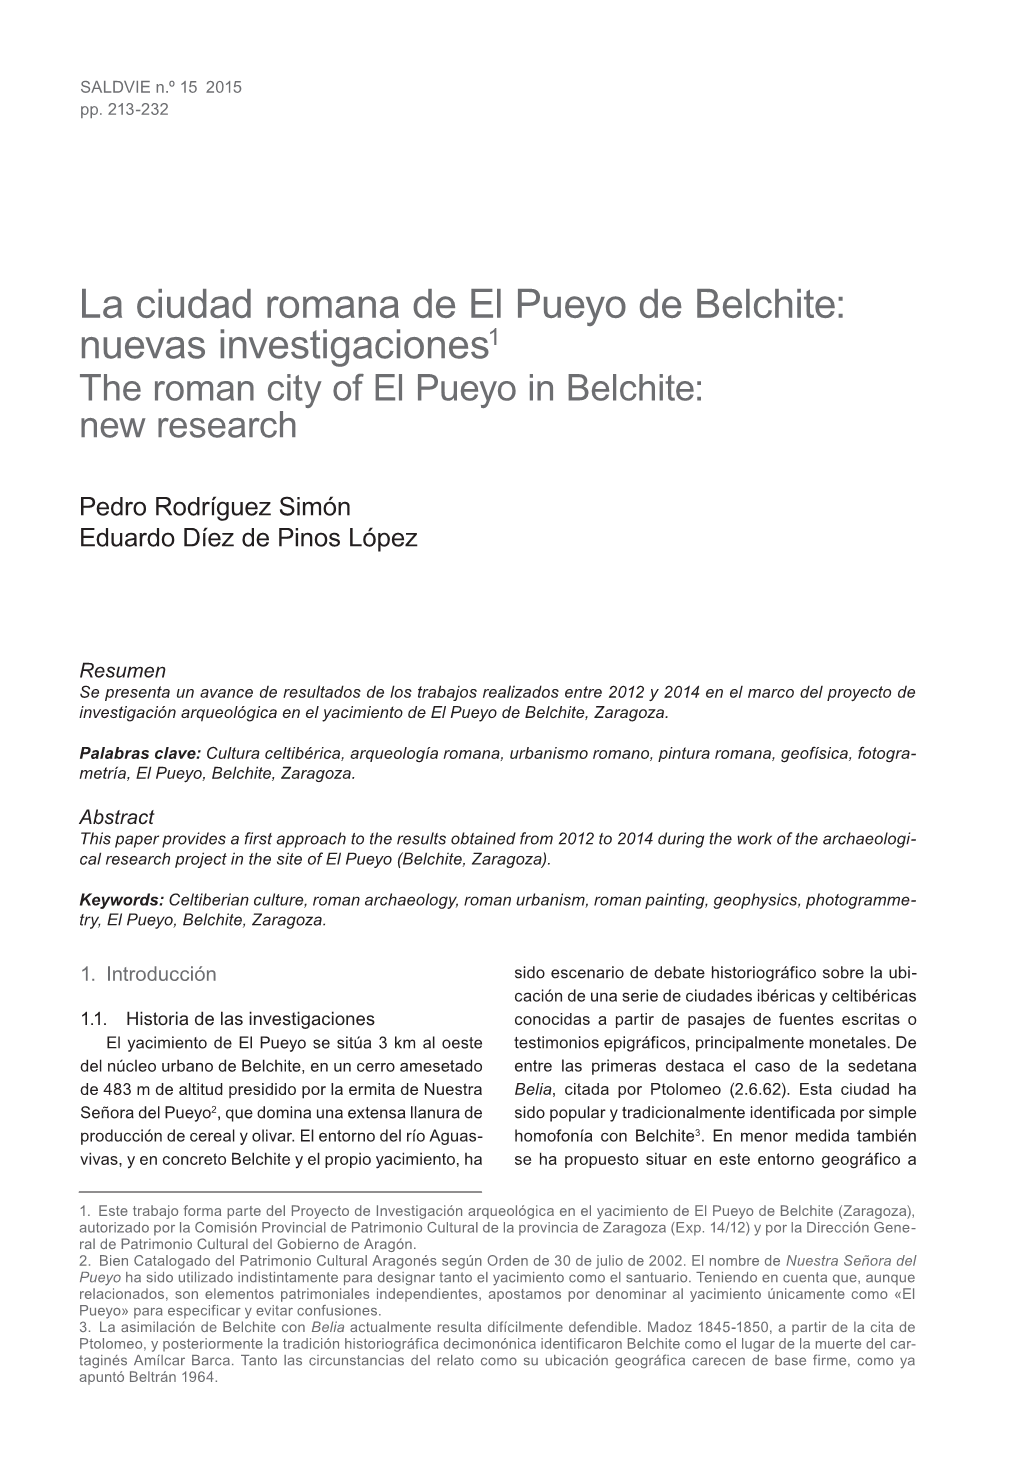 La Ciudad Romana De El Pueyo De Belchite: Nuevas Investigaciones1 the Roman City of El Pueyo in Belchite: New Research